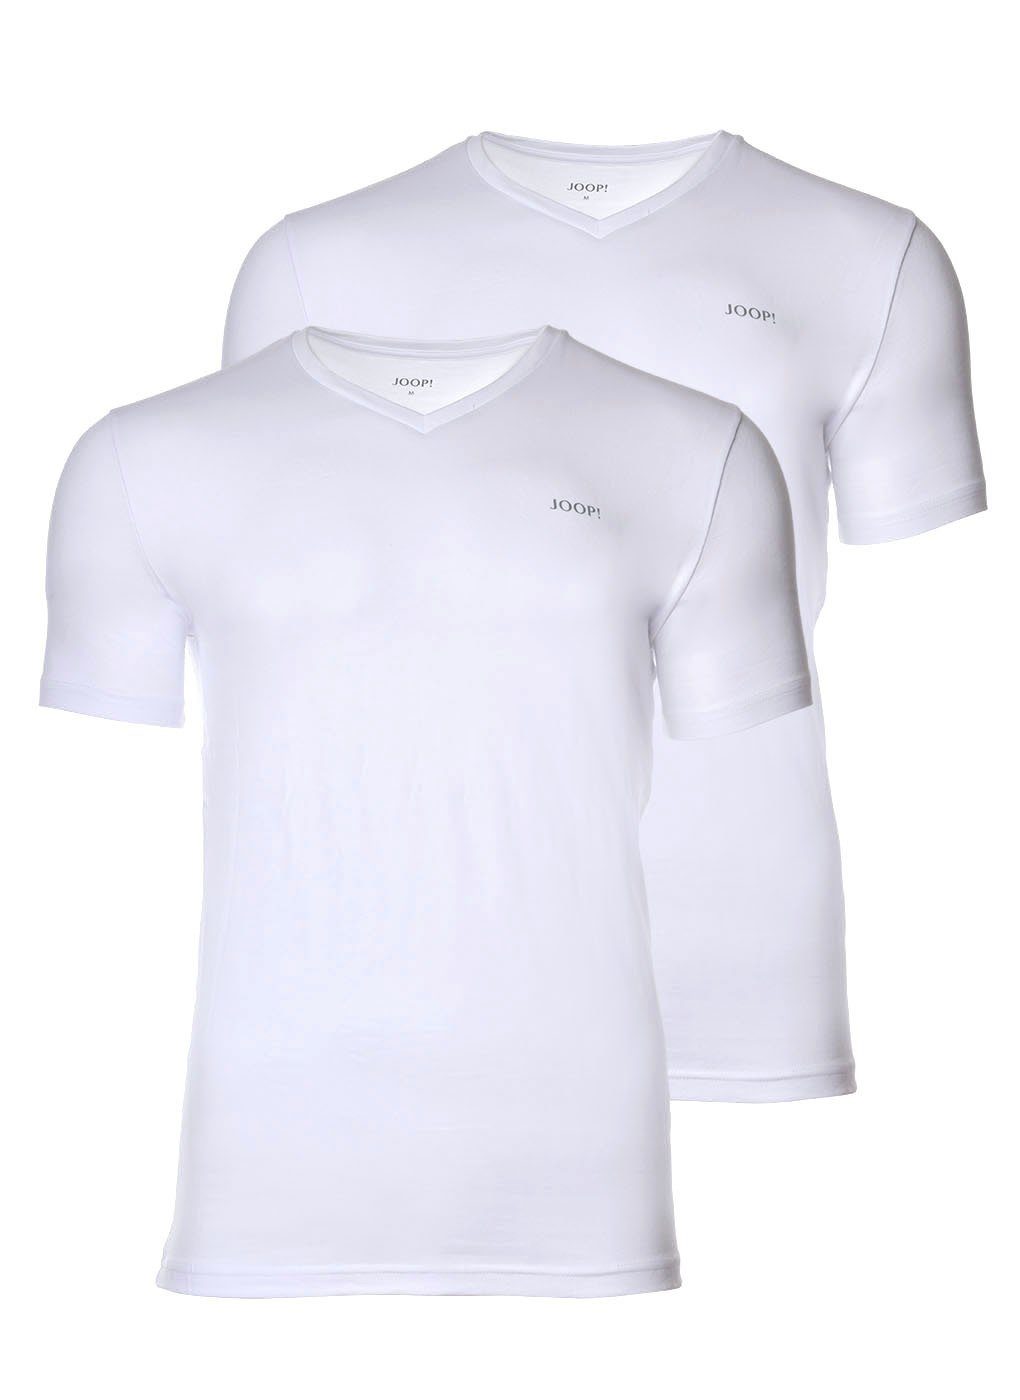 Joop! T-Shirt Herren 2er Weiß Unterhemd, T-Shirt, V-Neck - Pack